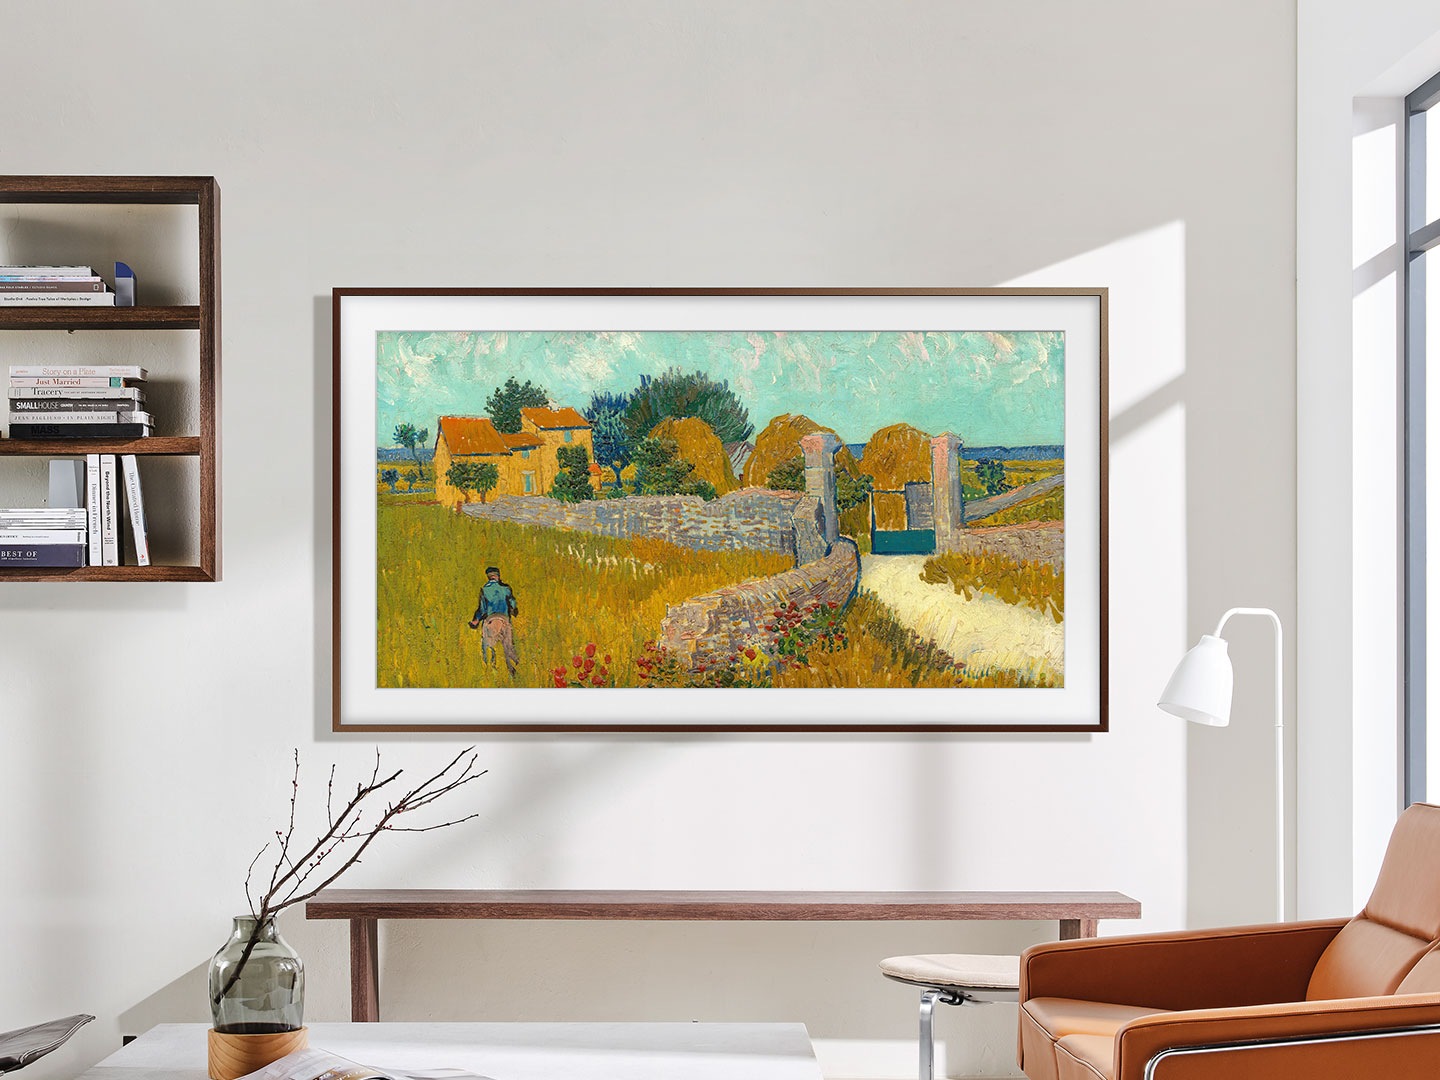 Het frame hangt aan de muur in een woonkamer met een zonsondergang boven een stad